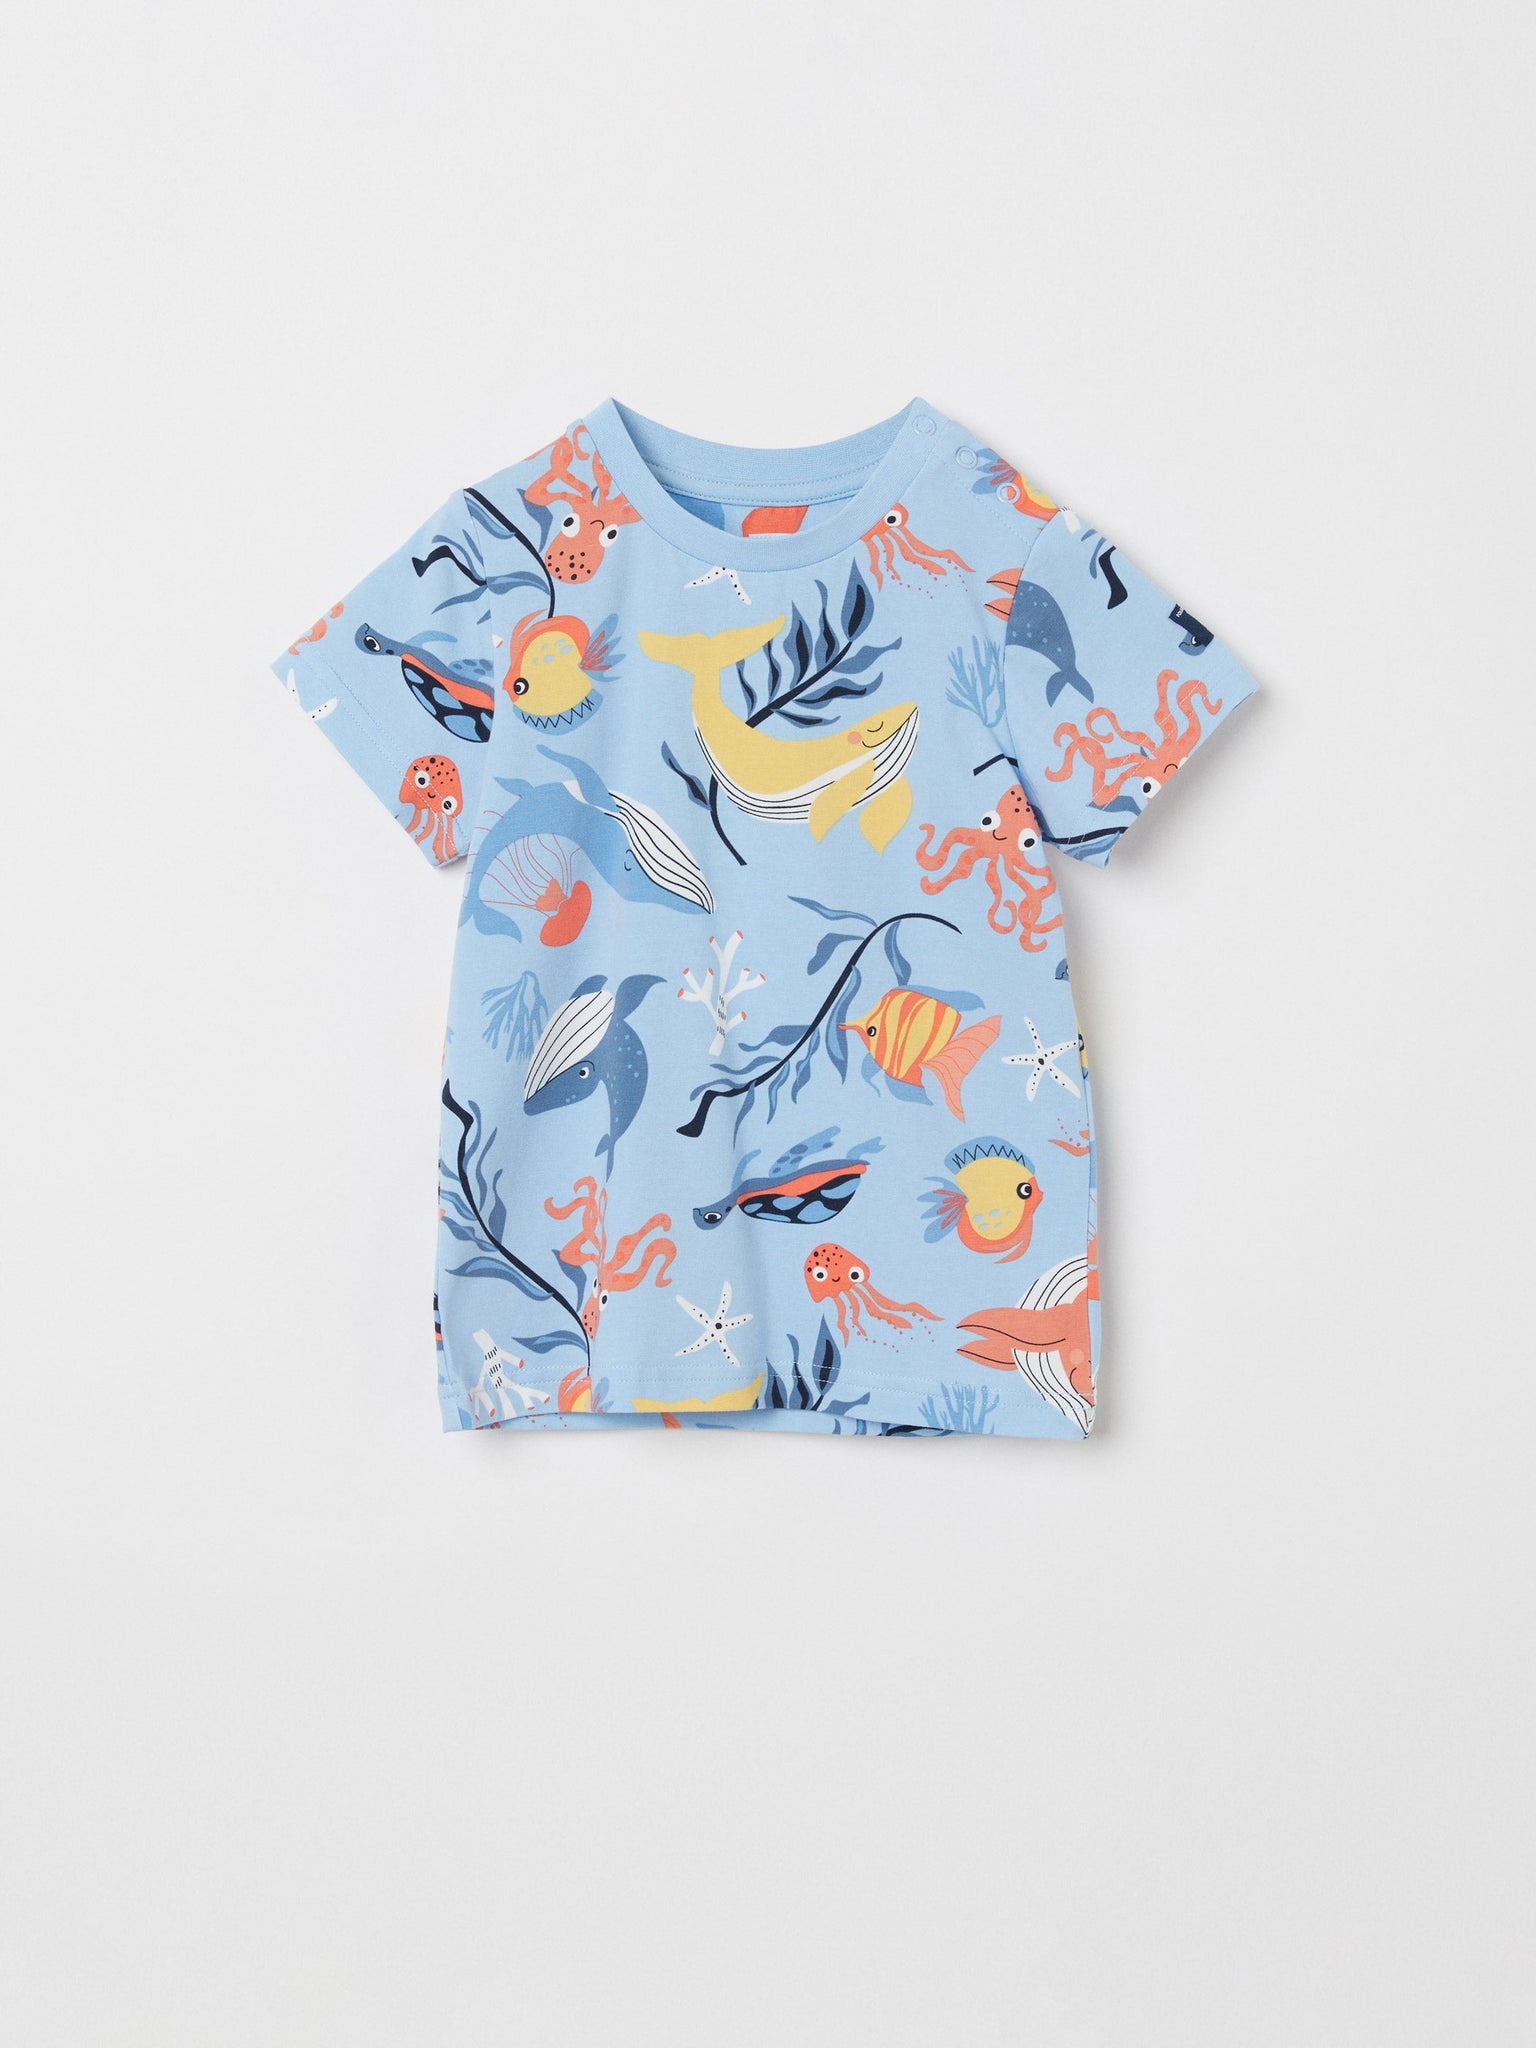 Sealife Print Blue Kids T-Shirt | Polarn O. Pyret UK